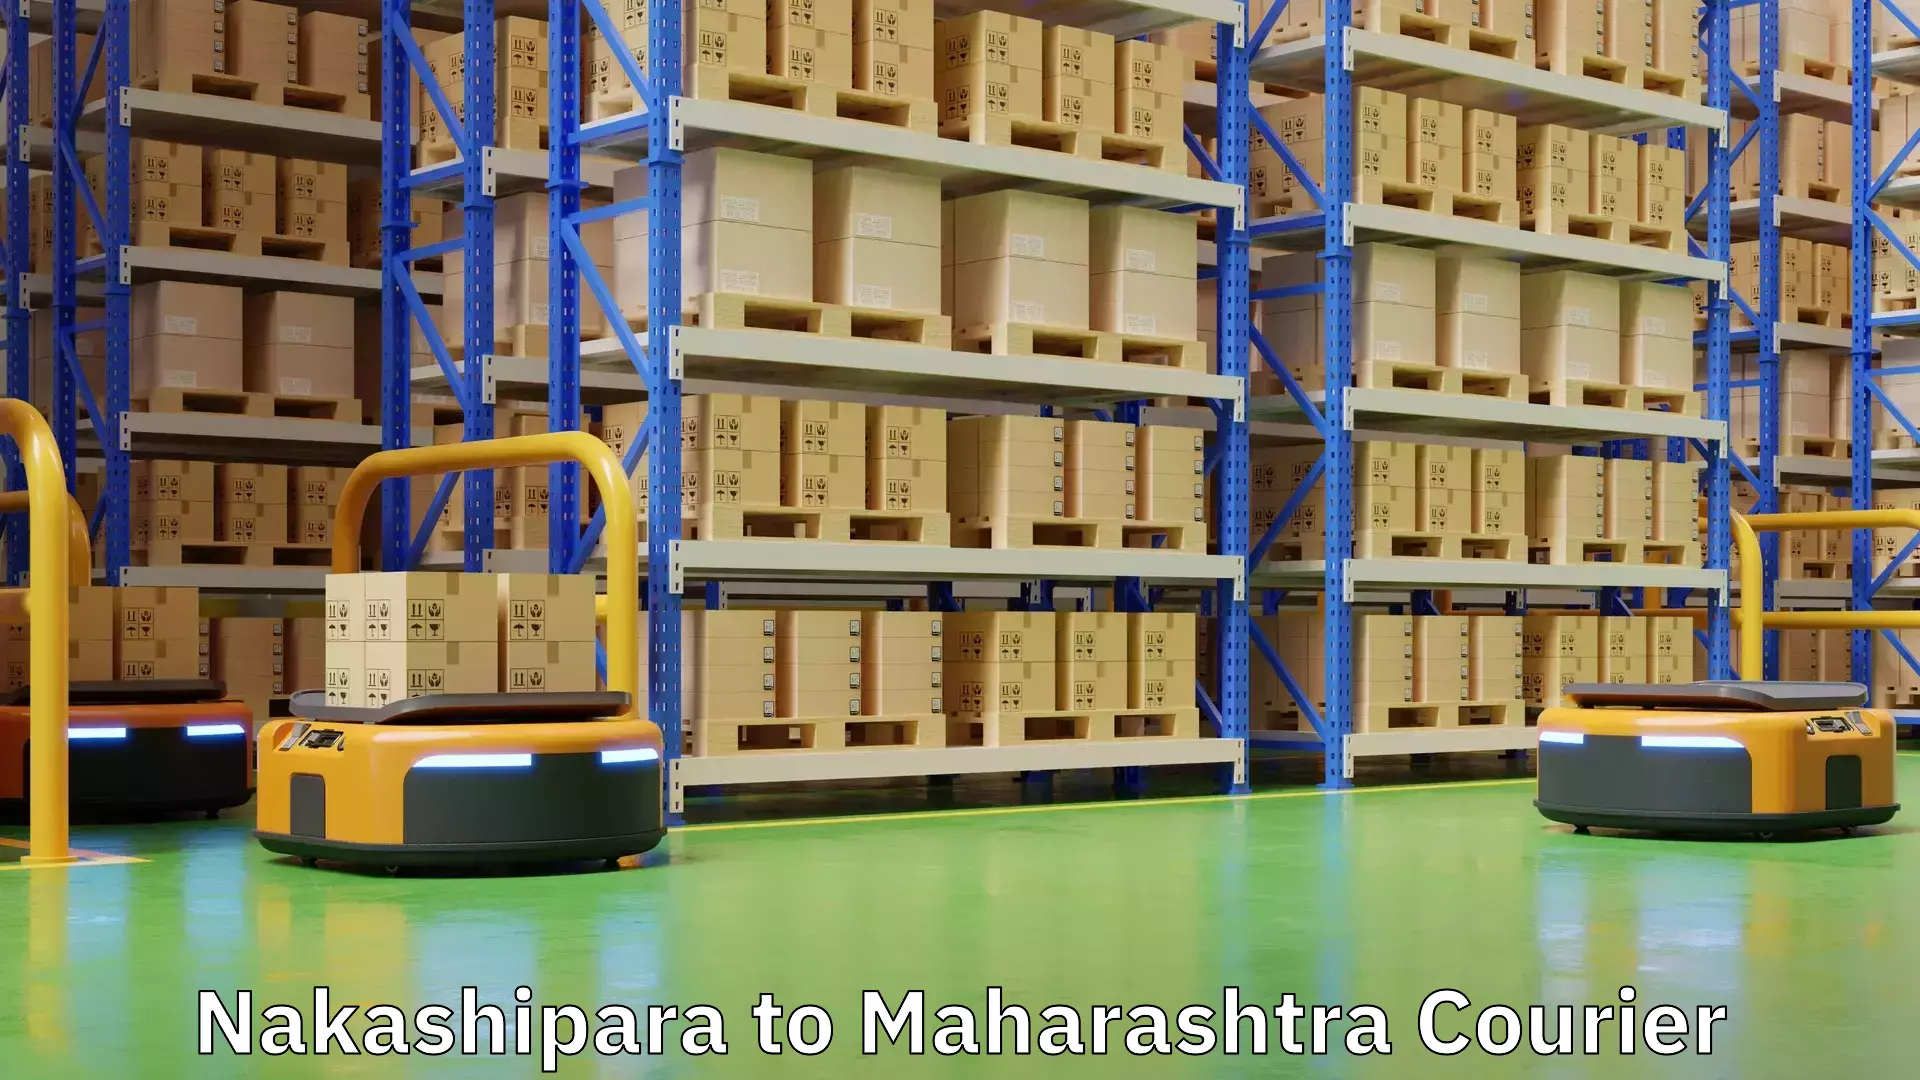 Residential courier service Nakashipara to Maharashtra